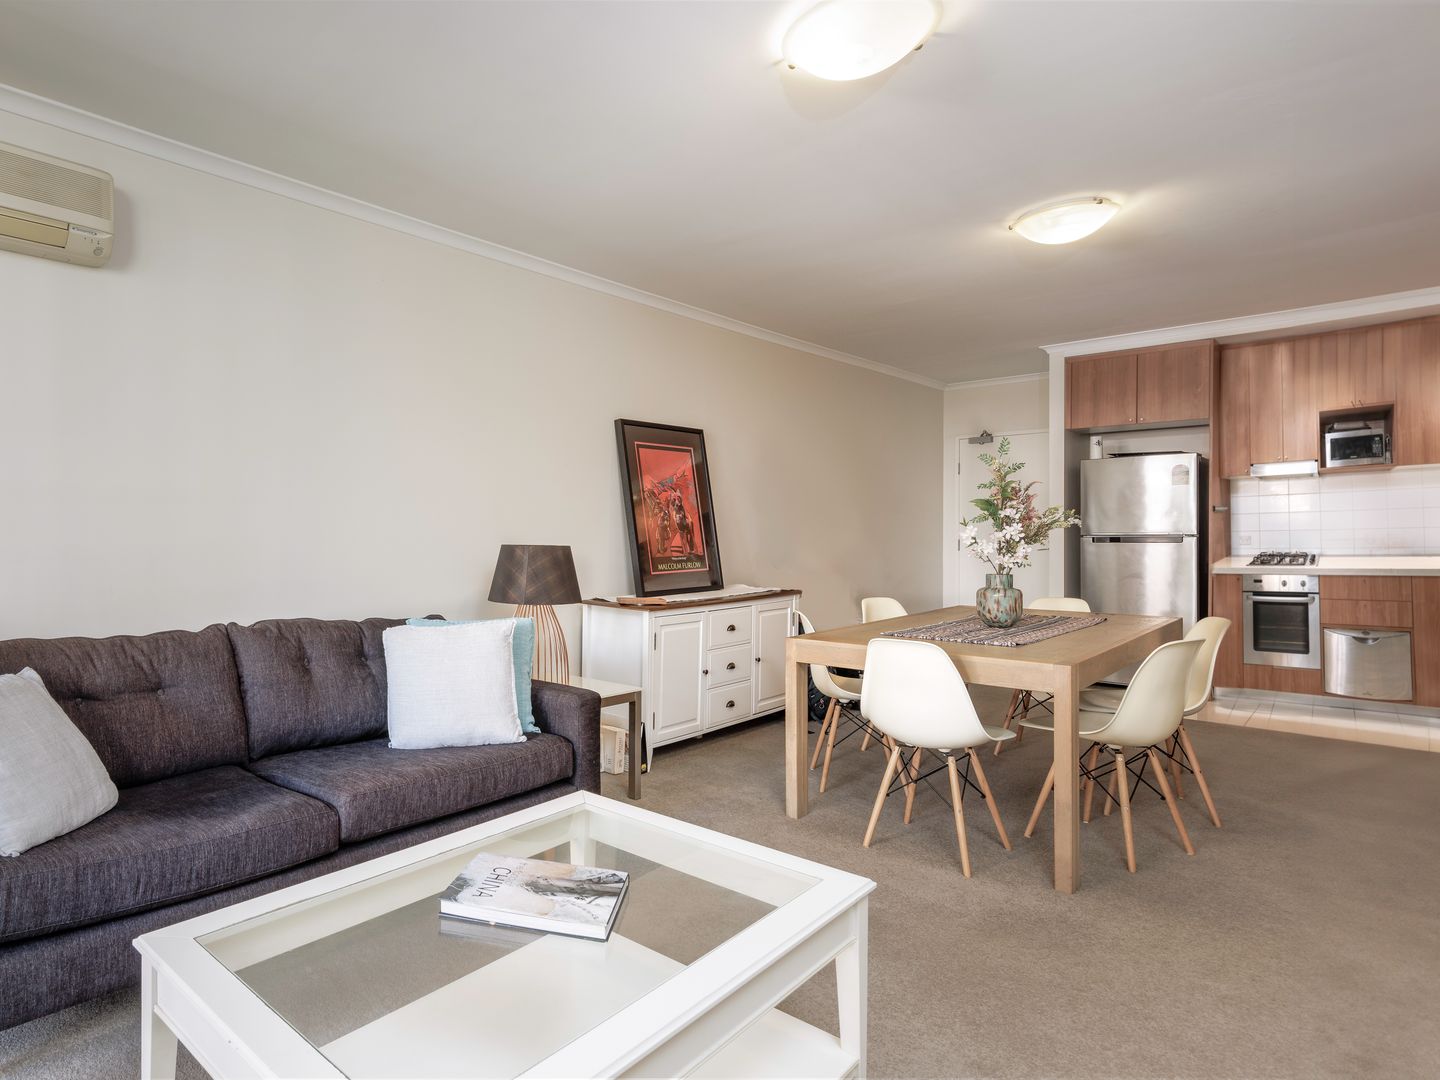 1 bedrooms Apartment / Unit / Flat in 1408/41 Waitara Avenue WAITARA NSW, 2077